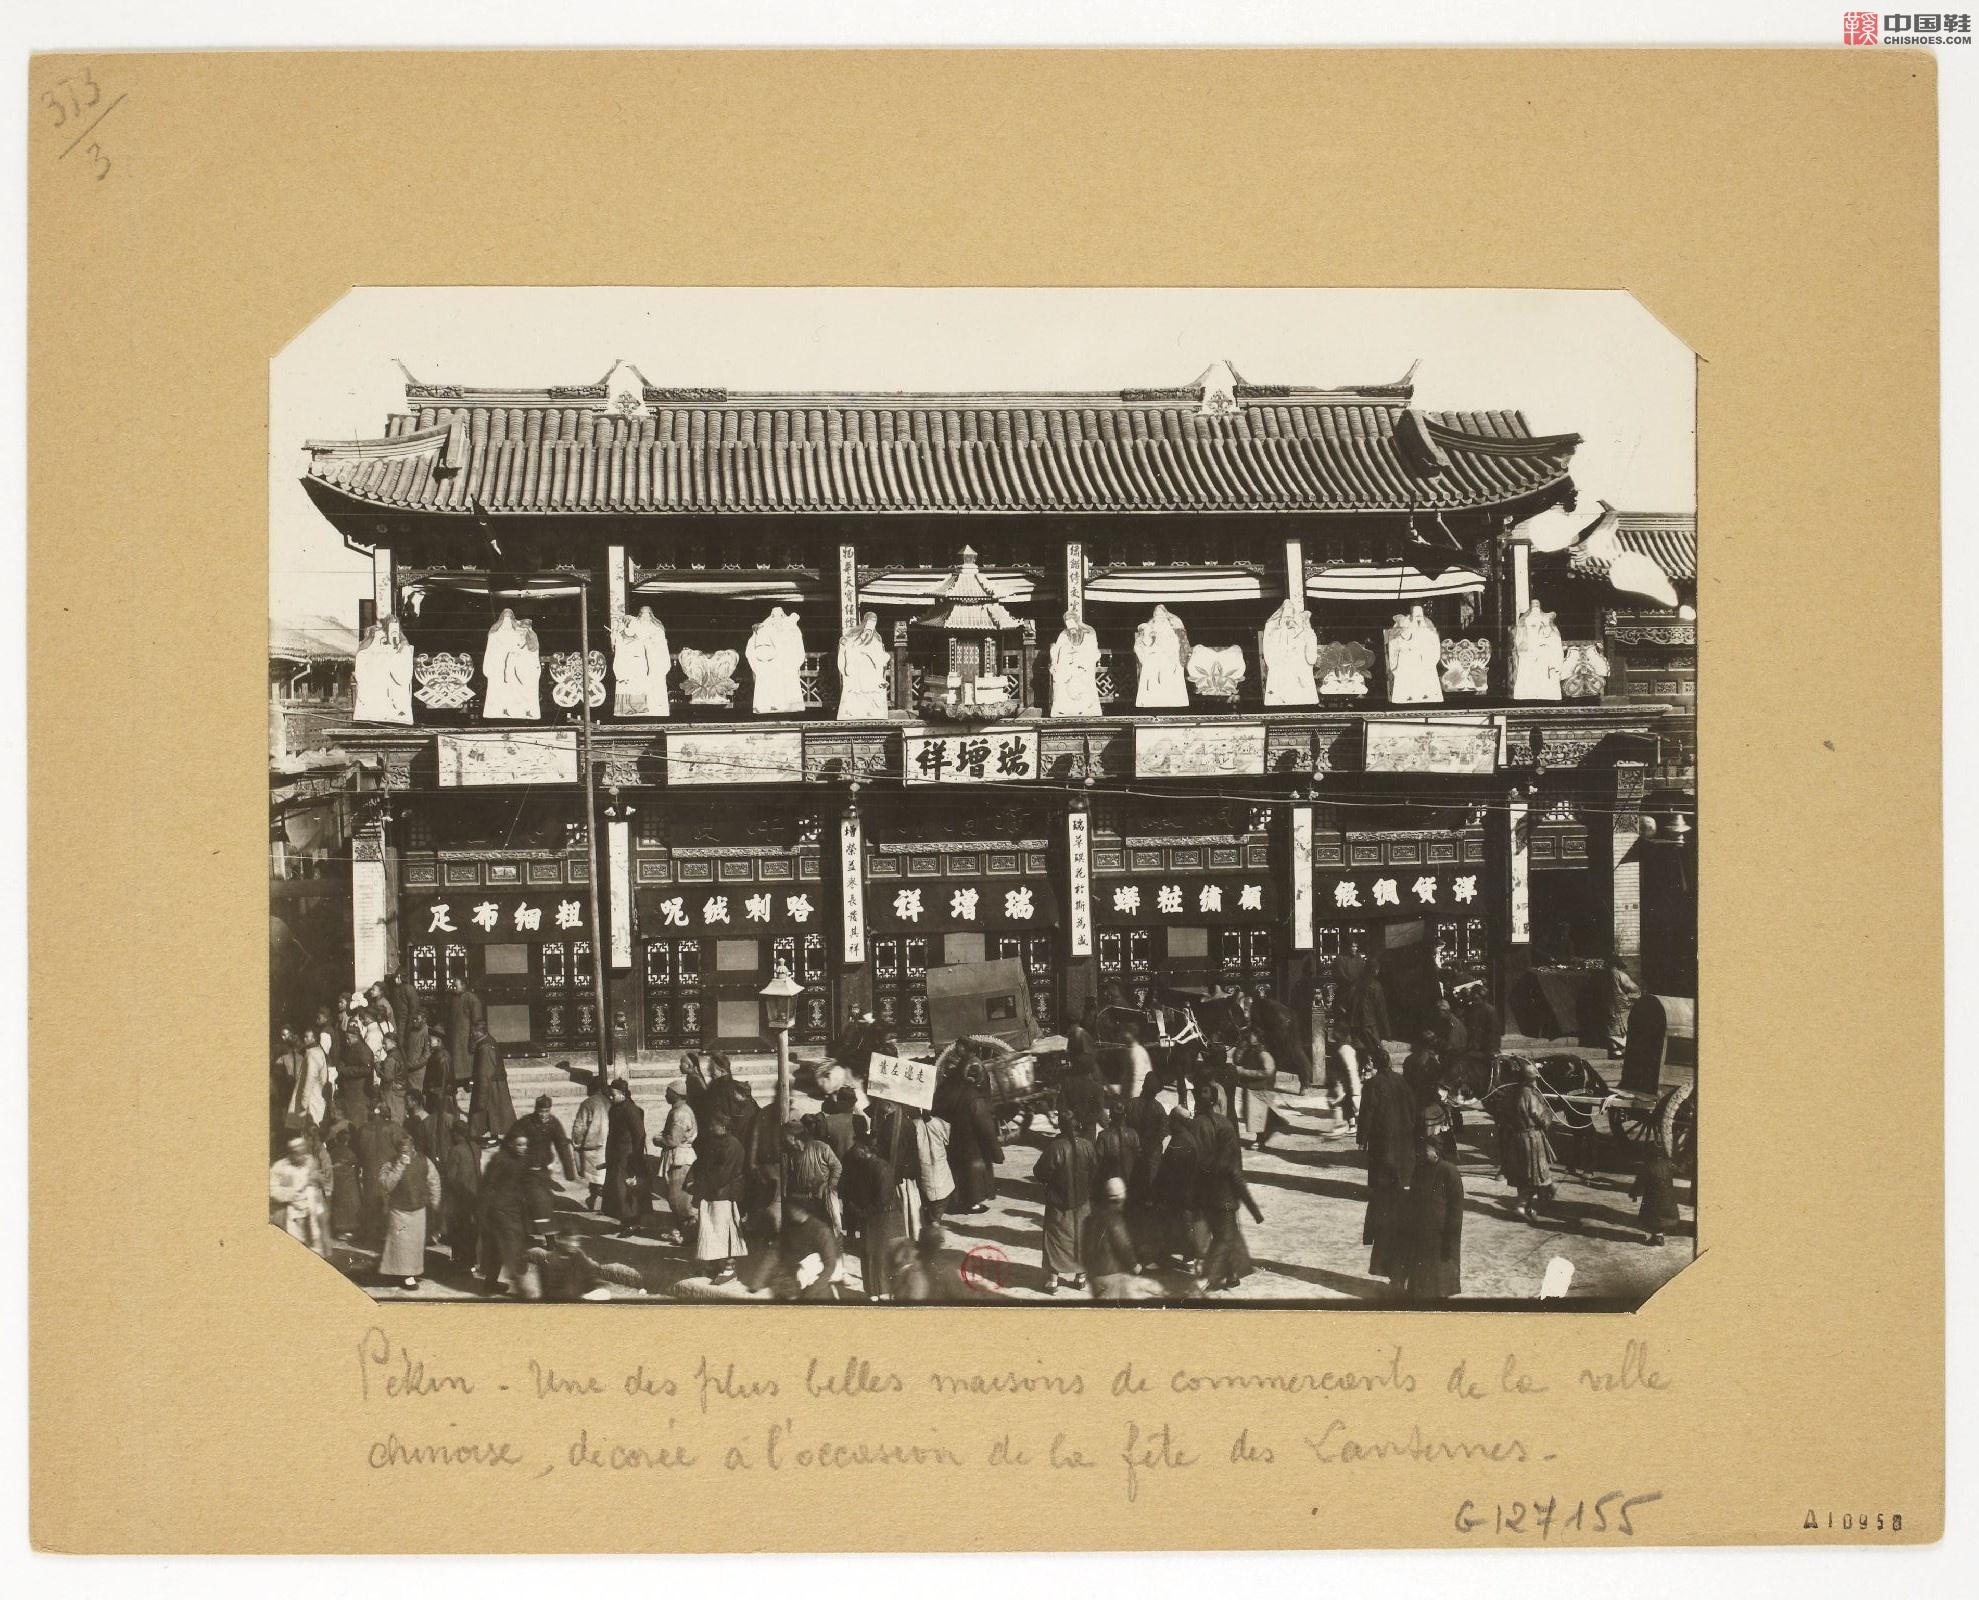 拉里贝的中国影像记录.415幅.By Firmin Laribe.1900-1910年_Page_164.jpg